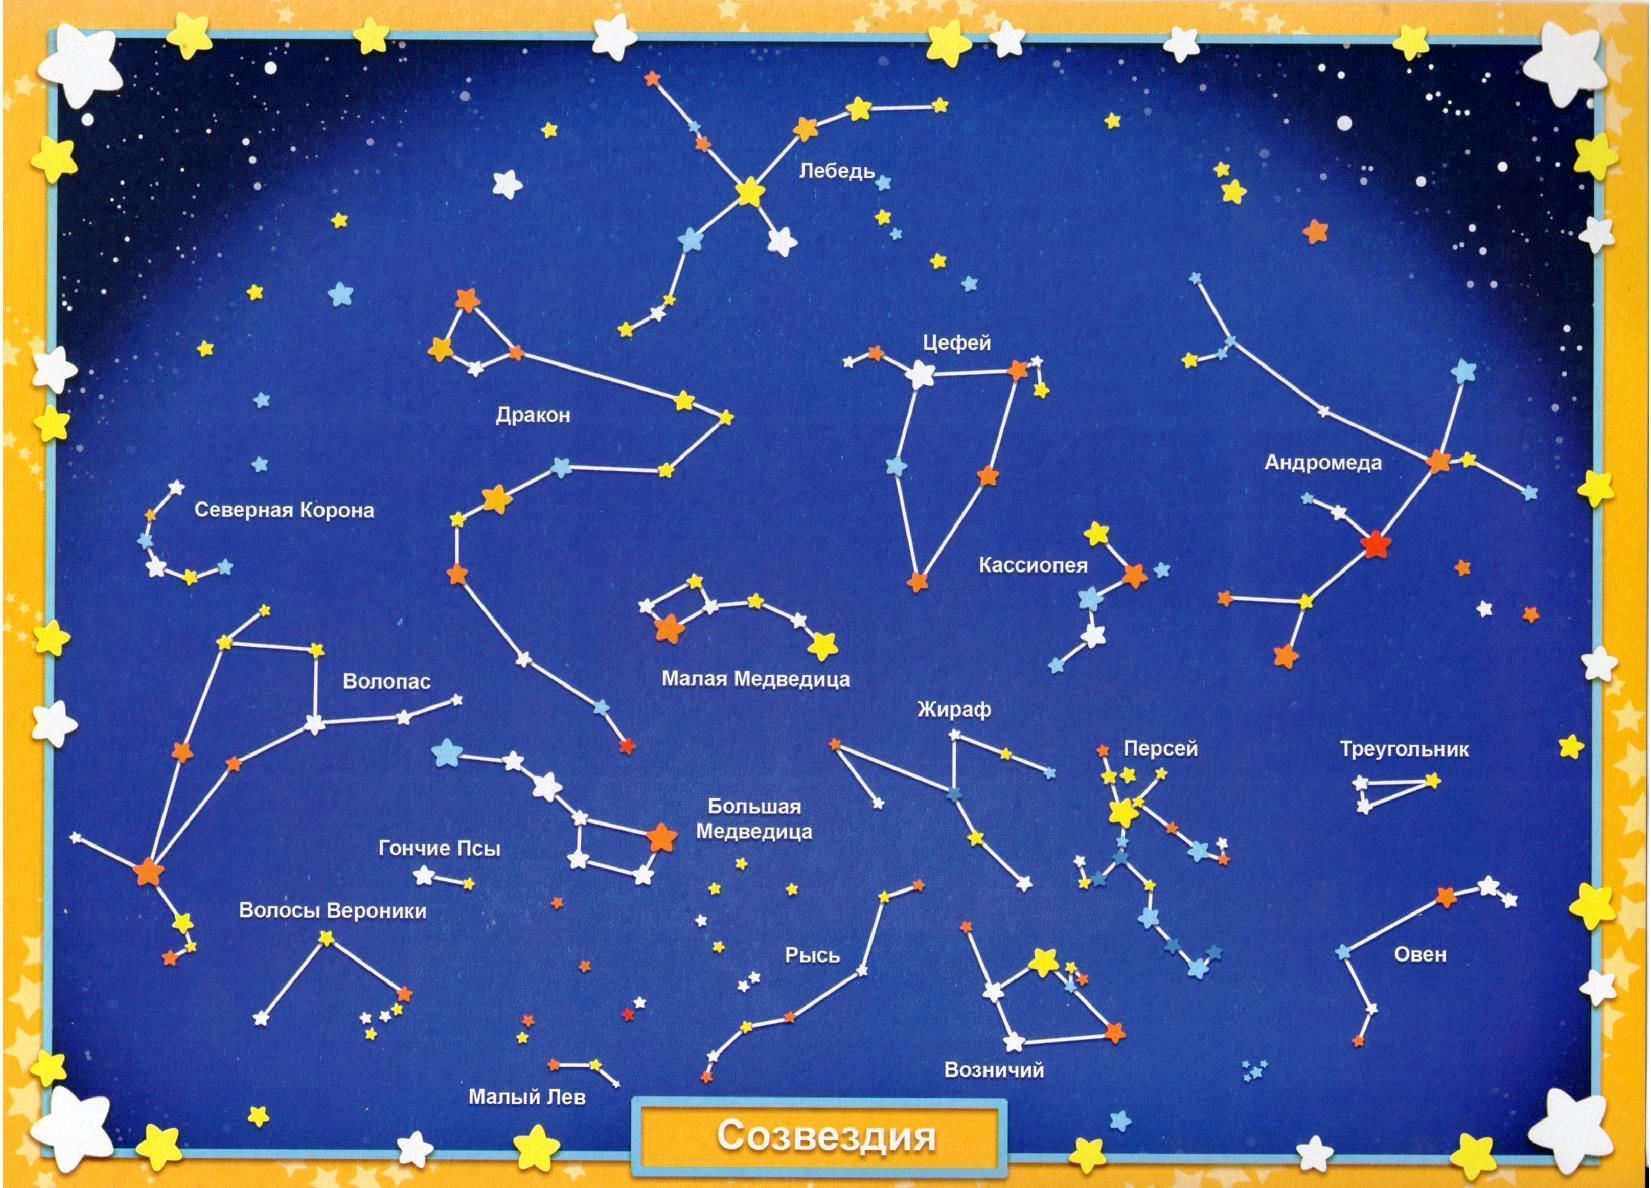 Созвездие на небосклоне. Схематическое изображение созвездий для детей и их названия. Звездное небо созвездия для детей. Карта звездного неба с названиями созвездий. Звездноемнебл созвездия.